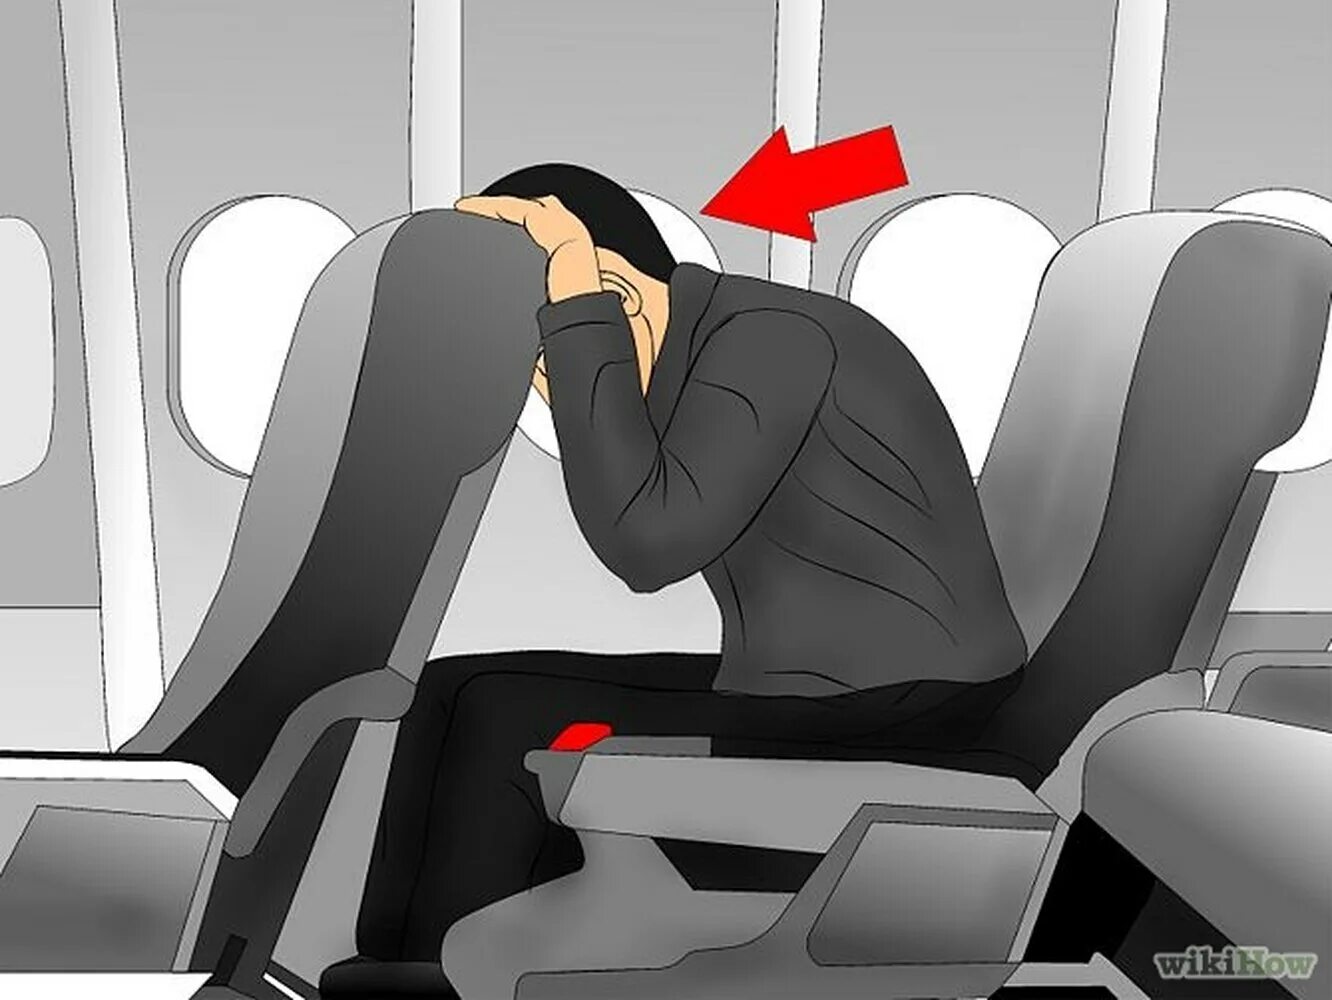 Защитная поза в самолете. Безопасная поза в самолете. Поза при аварийной посадке самолета. Безопасность сидений в самолетах.